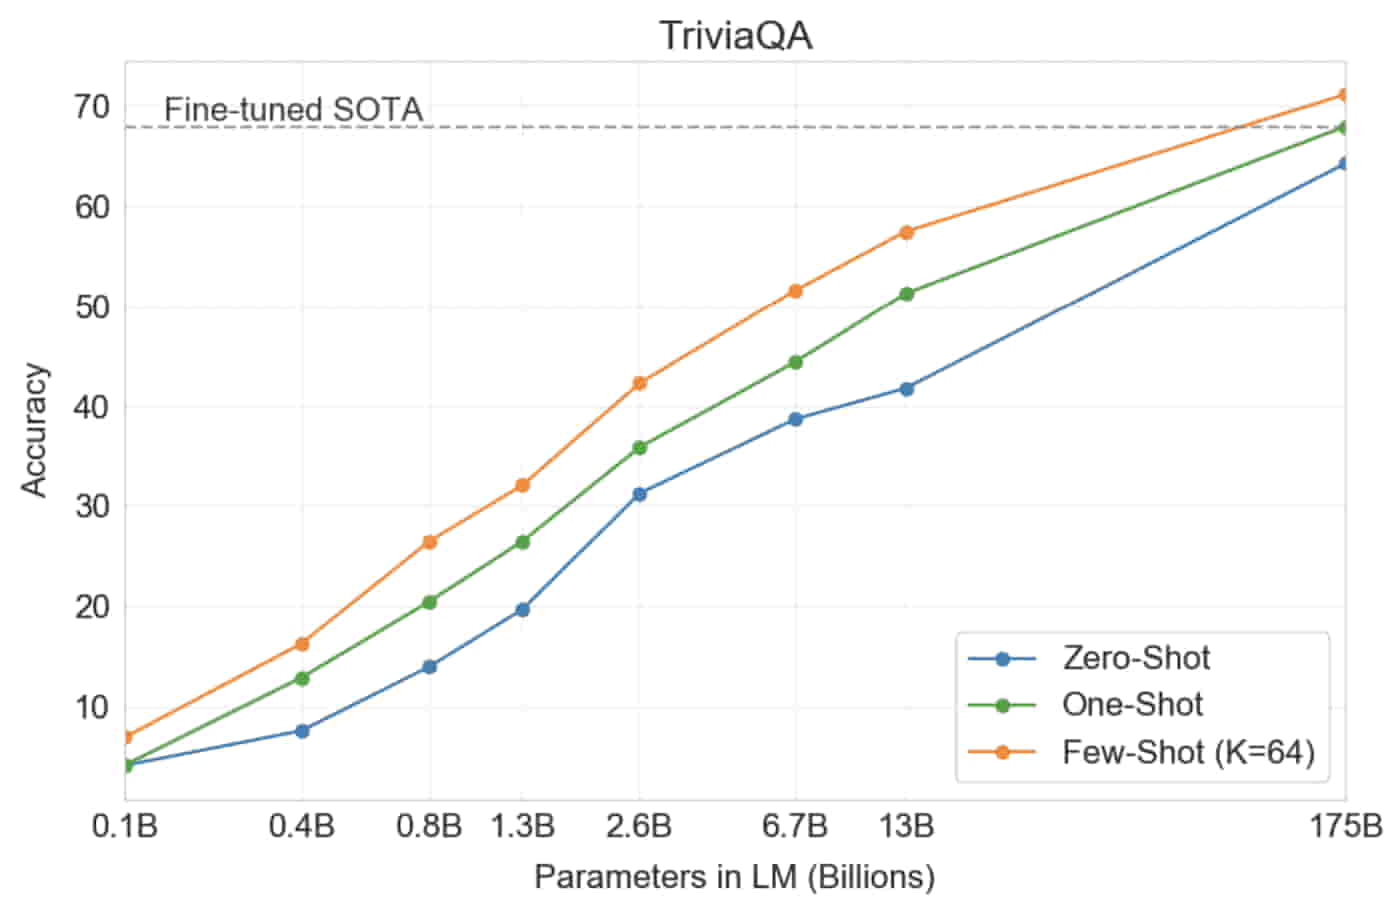 GPT-3 outperformed a SOTA